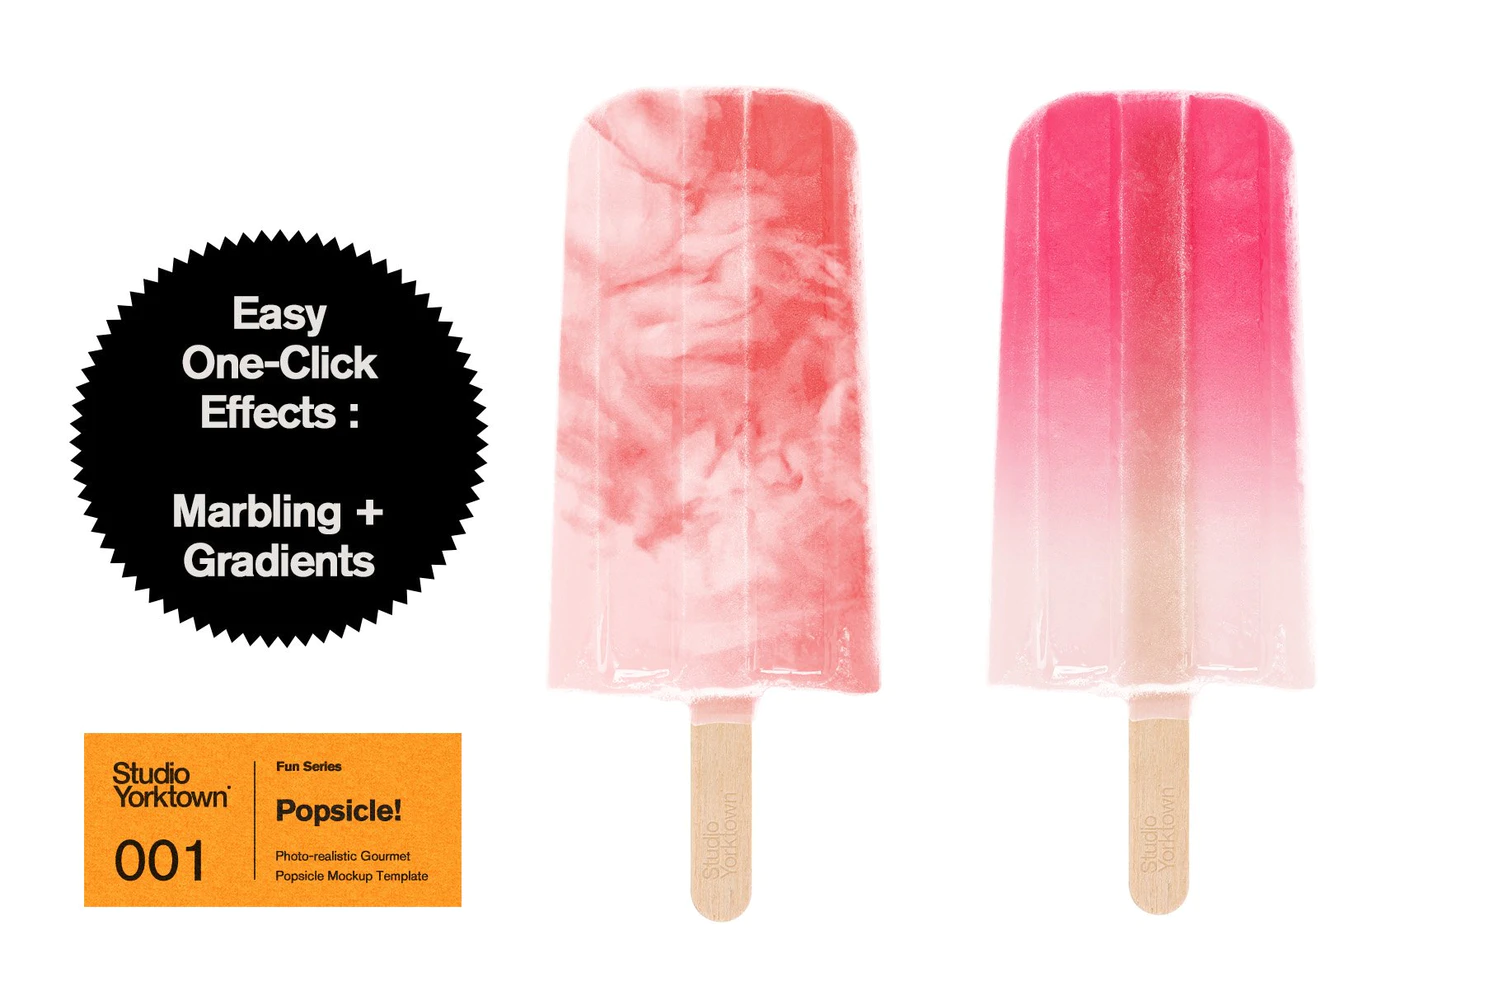 2511 水果夹心冰棍雪糕品牌设计展示PSD样机模板 Popsicle! Ice Pop Mockup Template